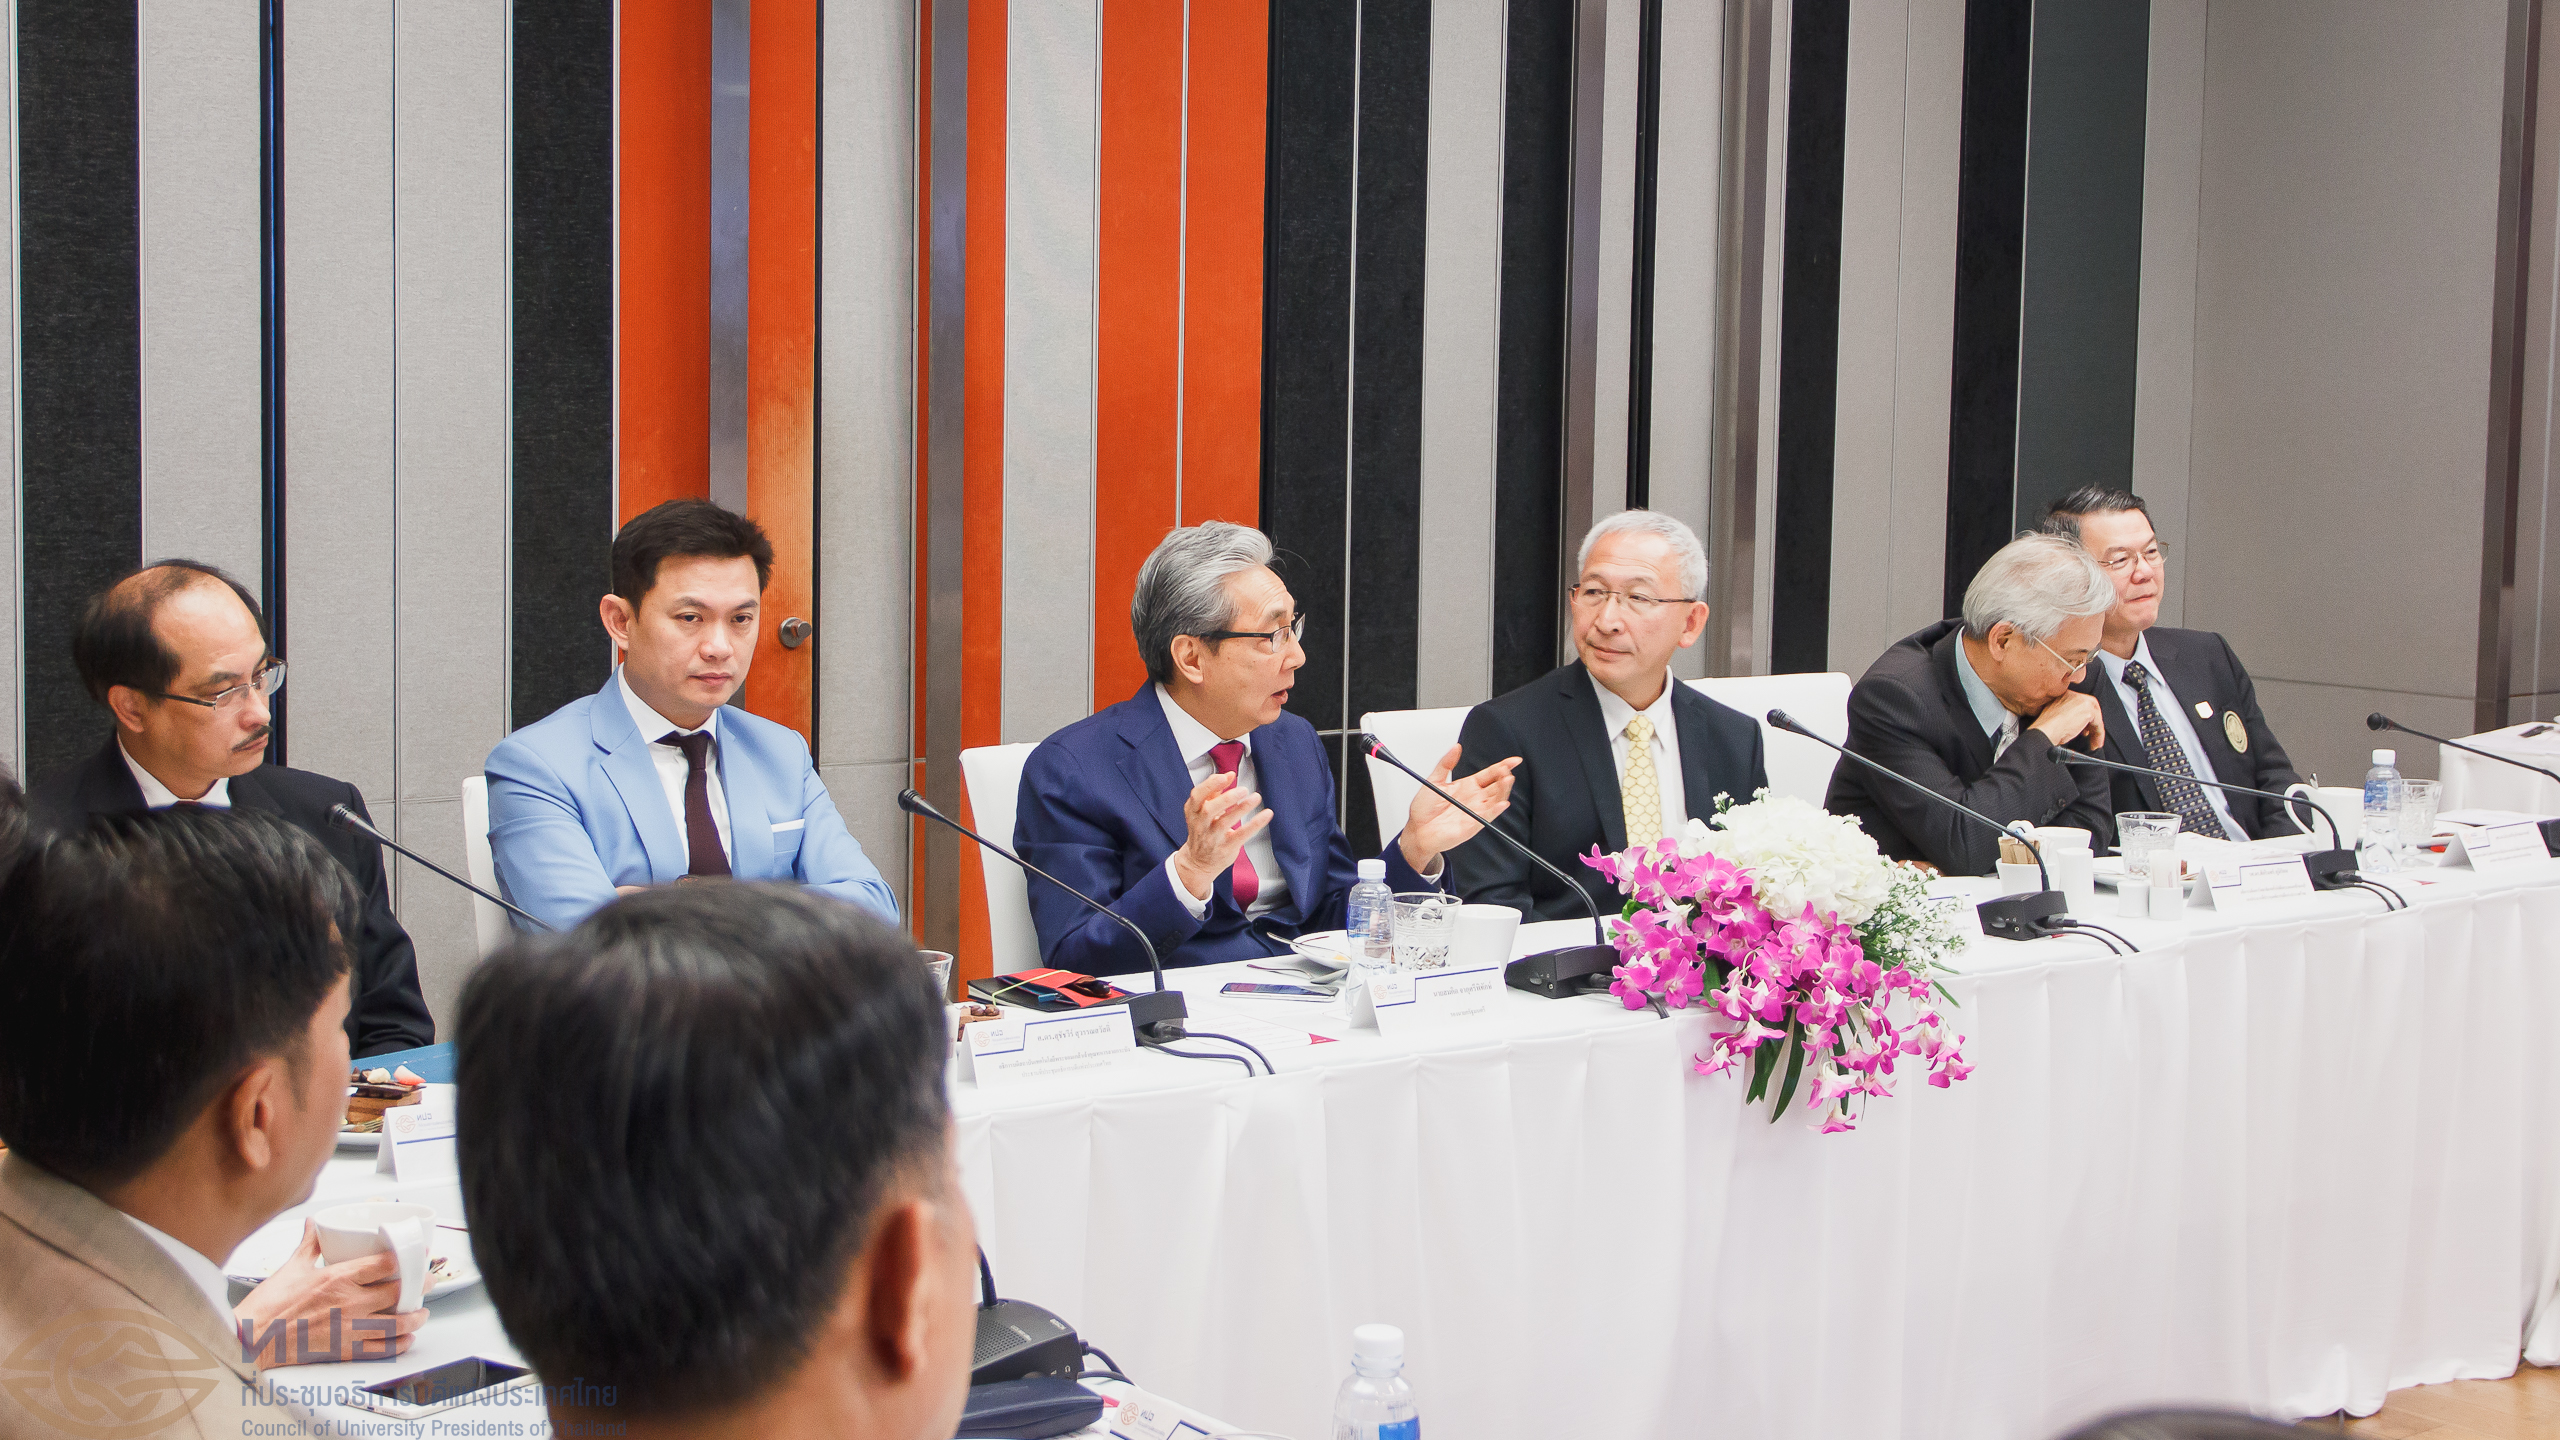 การประชุมคณะกรรมการบริหารที่ประชุมอธิการบดีแห่งประเทศไทย และสมาคมที่ประชุมอธิการบดีแห่งประเทศไทย ครั้งที่ 1/2561